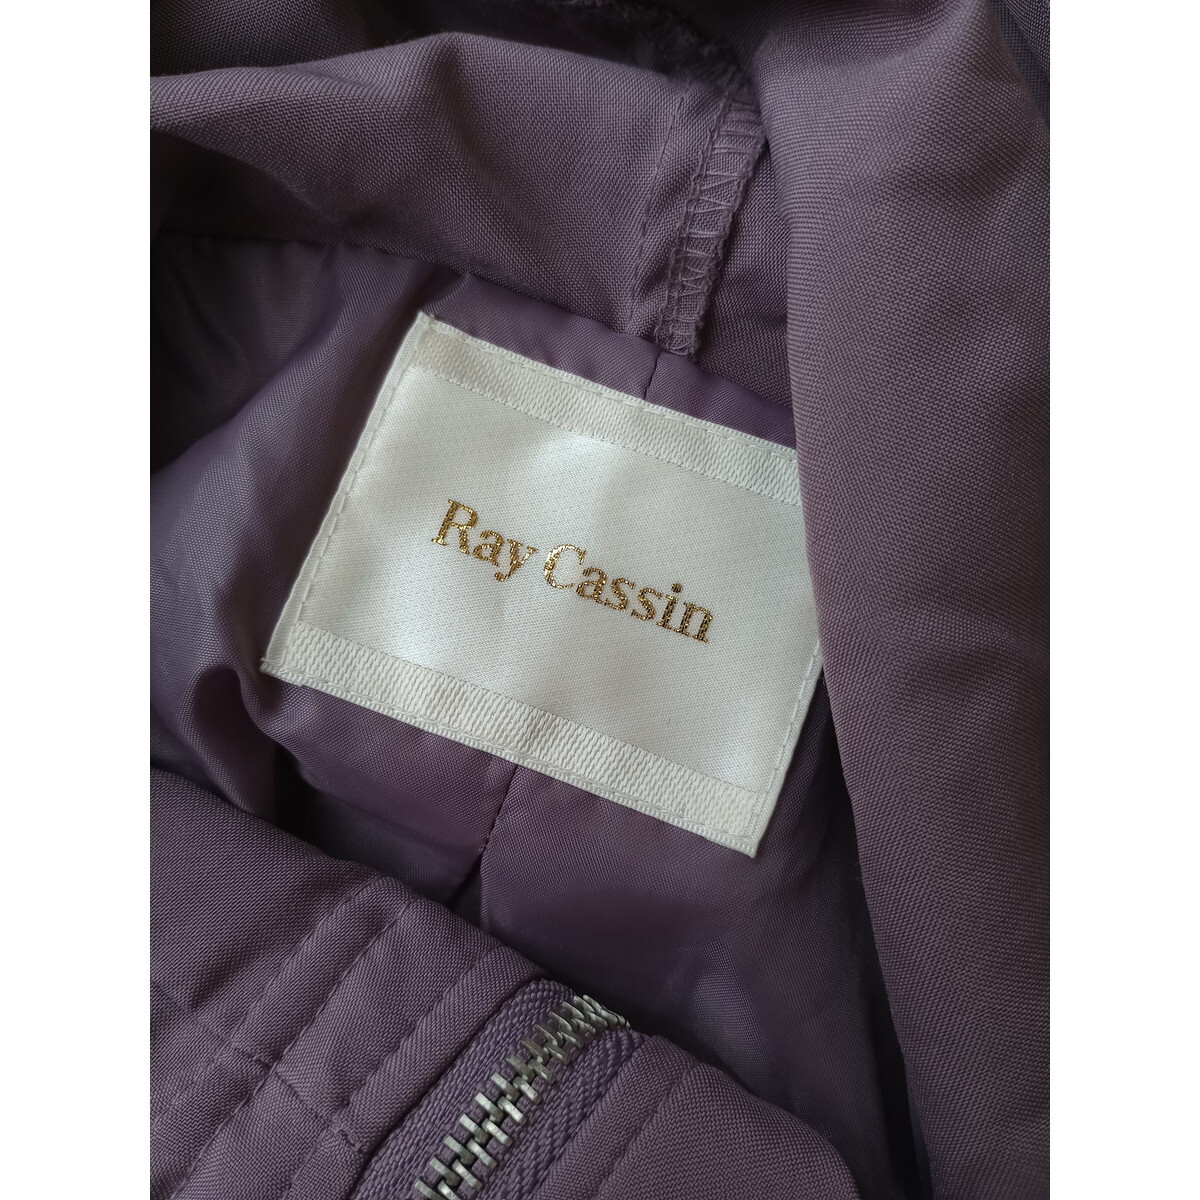 RAY CASSIN レイカズン「適度なゆるさとおしゃれ感。」フーディー ボリューム袖 ジャケット パープル (49K+0501)_画像7